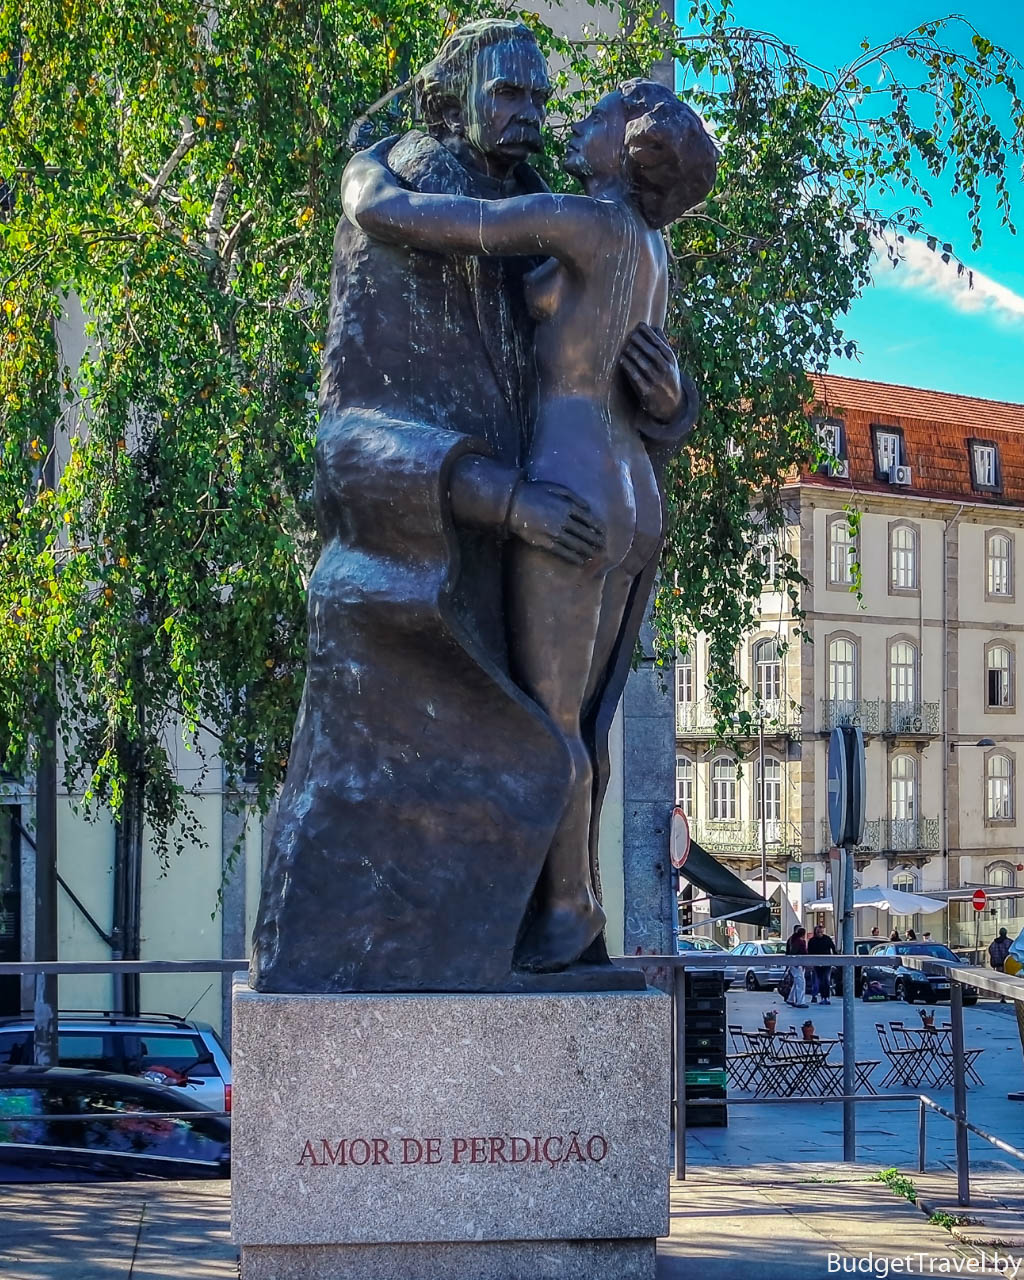 Памятник Amor de Perdicao в Порту